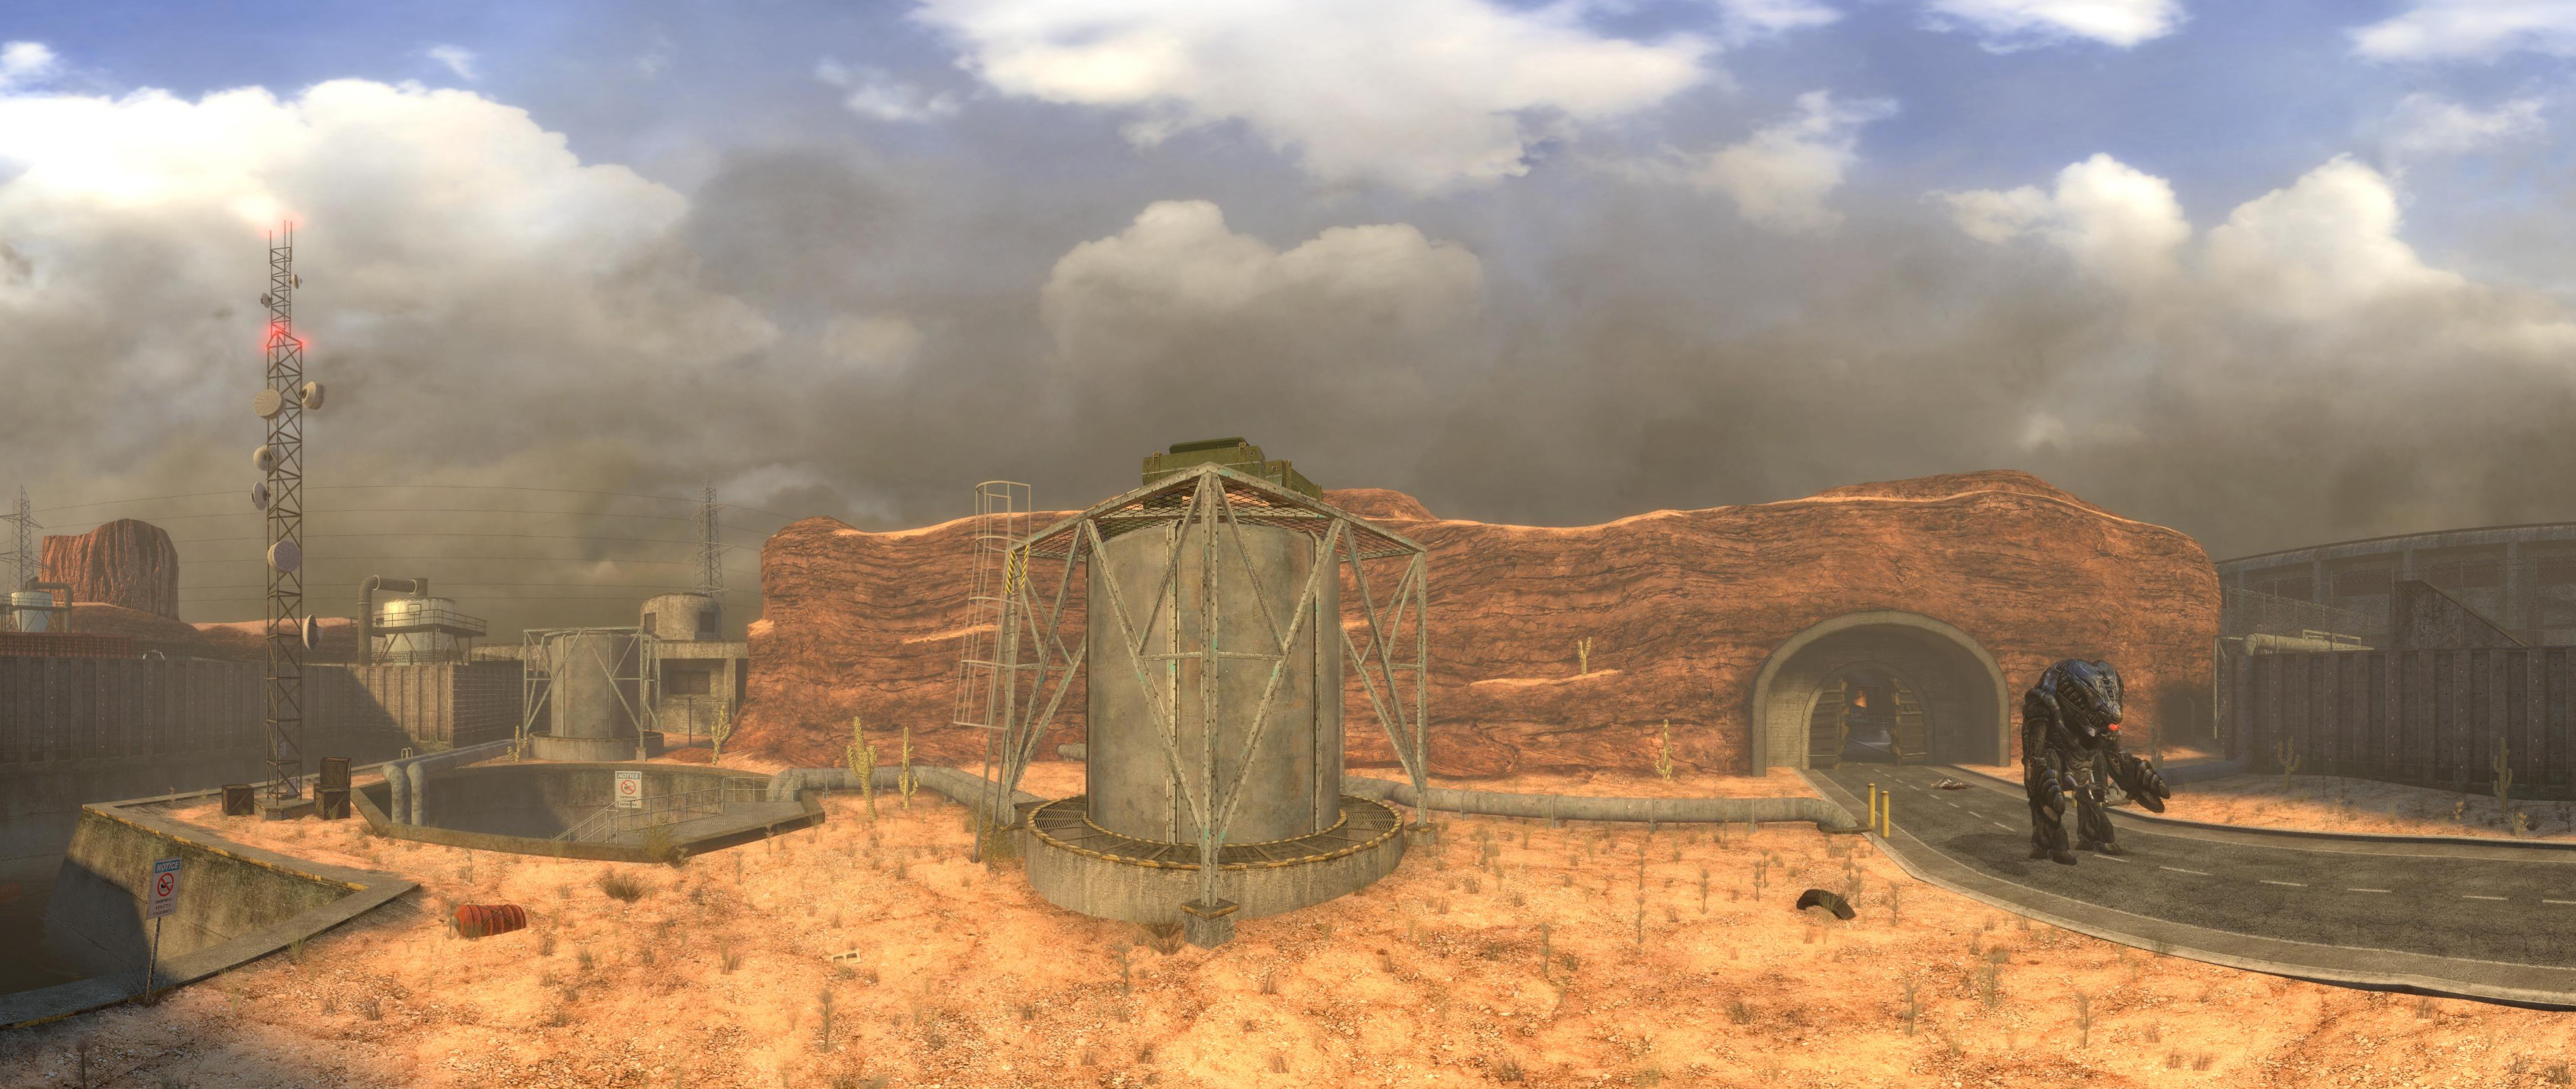 Мез мод. Блэк Меза пустыня. Black Mesa поверхность. Black Mesa surface tension. Черная Меза гора.